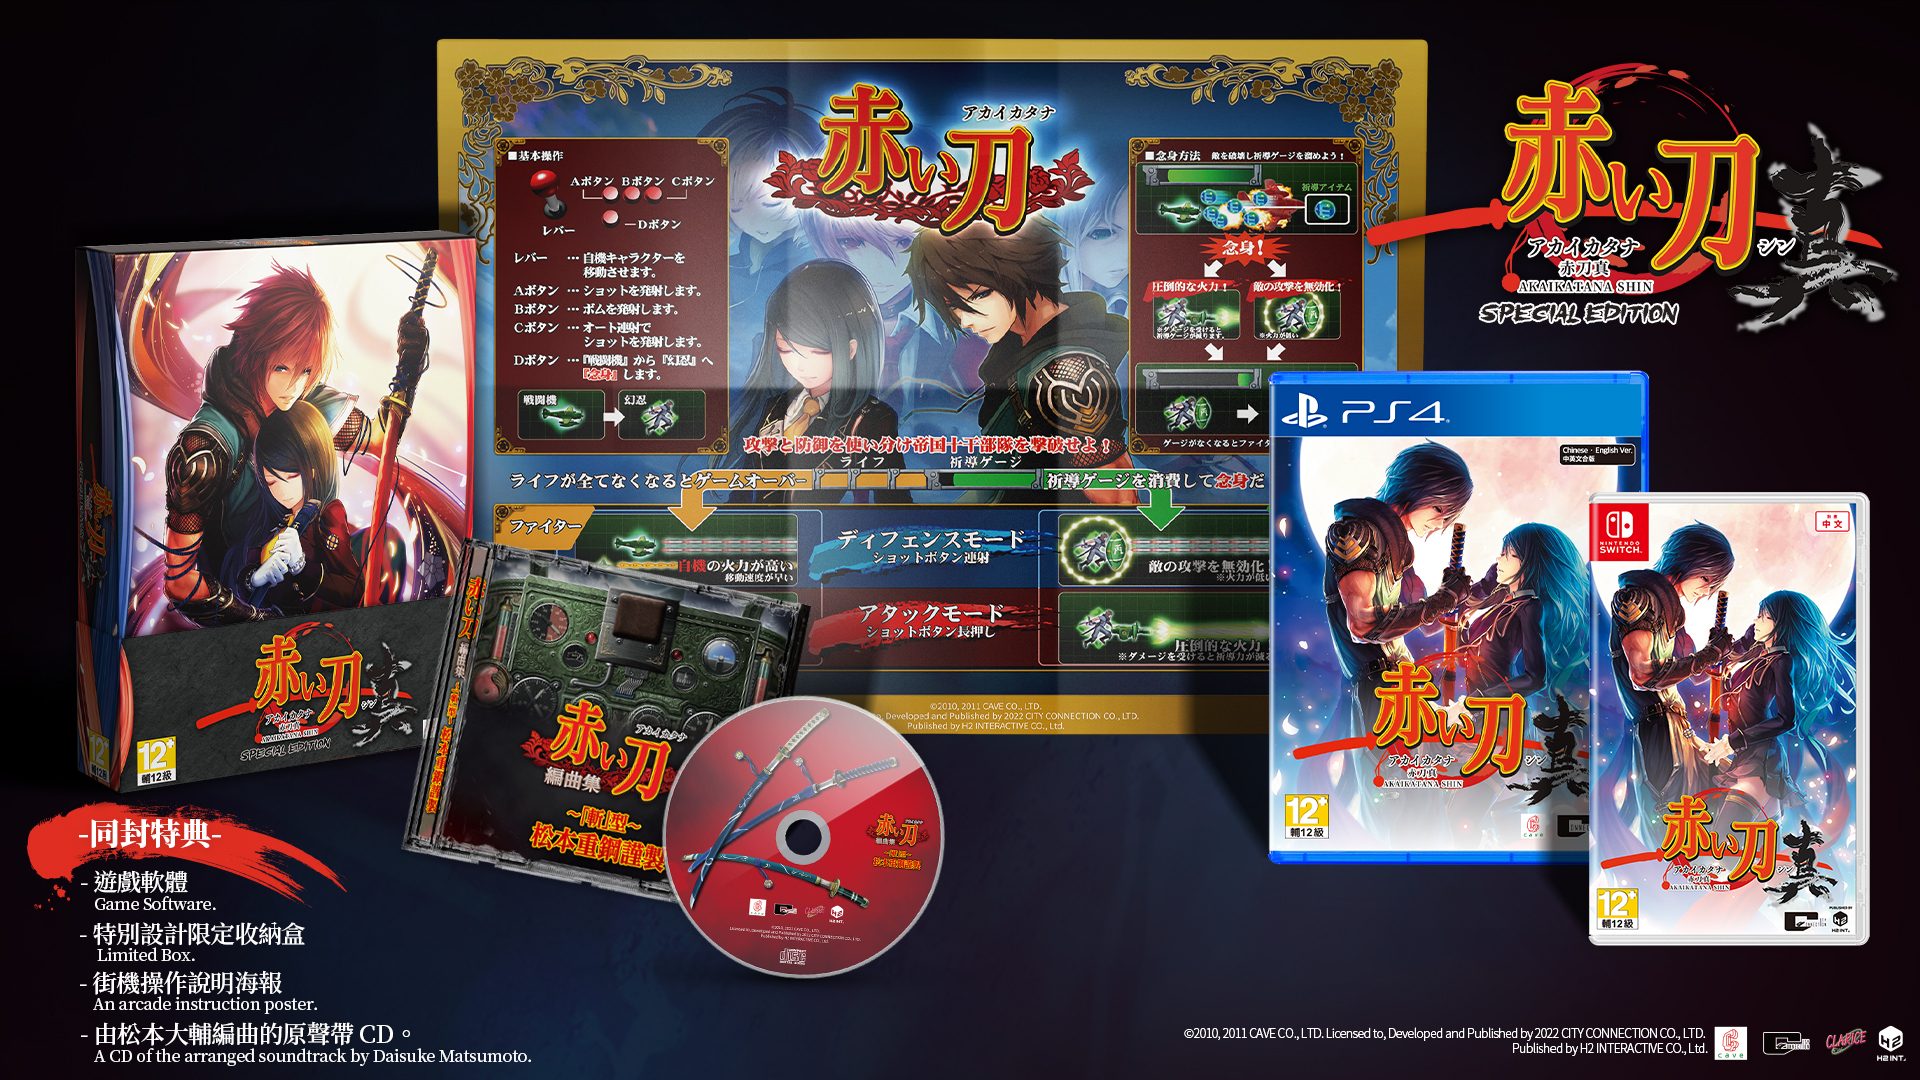 射擊遊戲《赤刀真》PS4 / Switch 繁體中文版公開預購特典和限定版資訊 